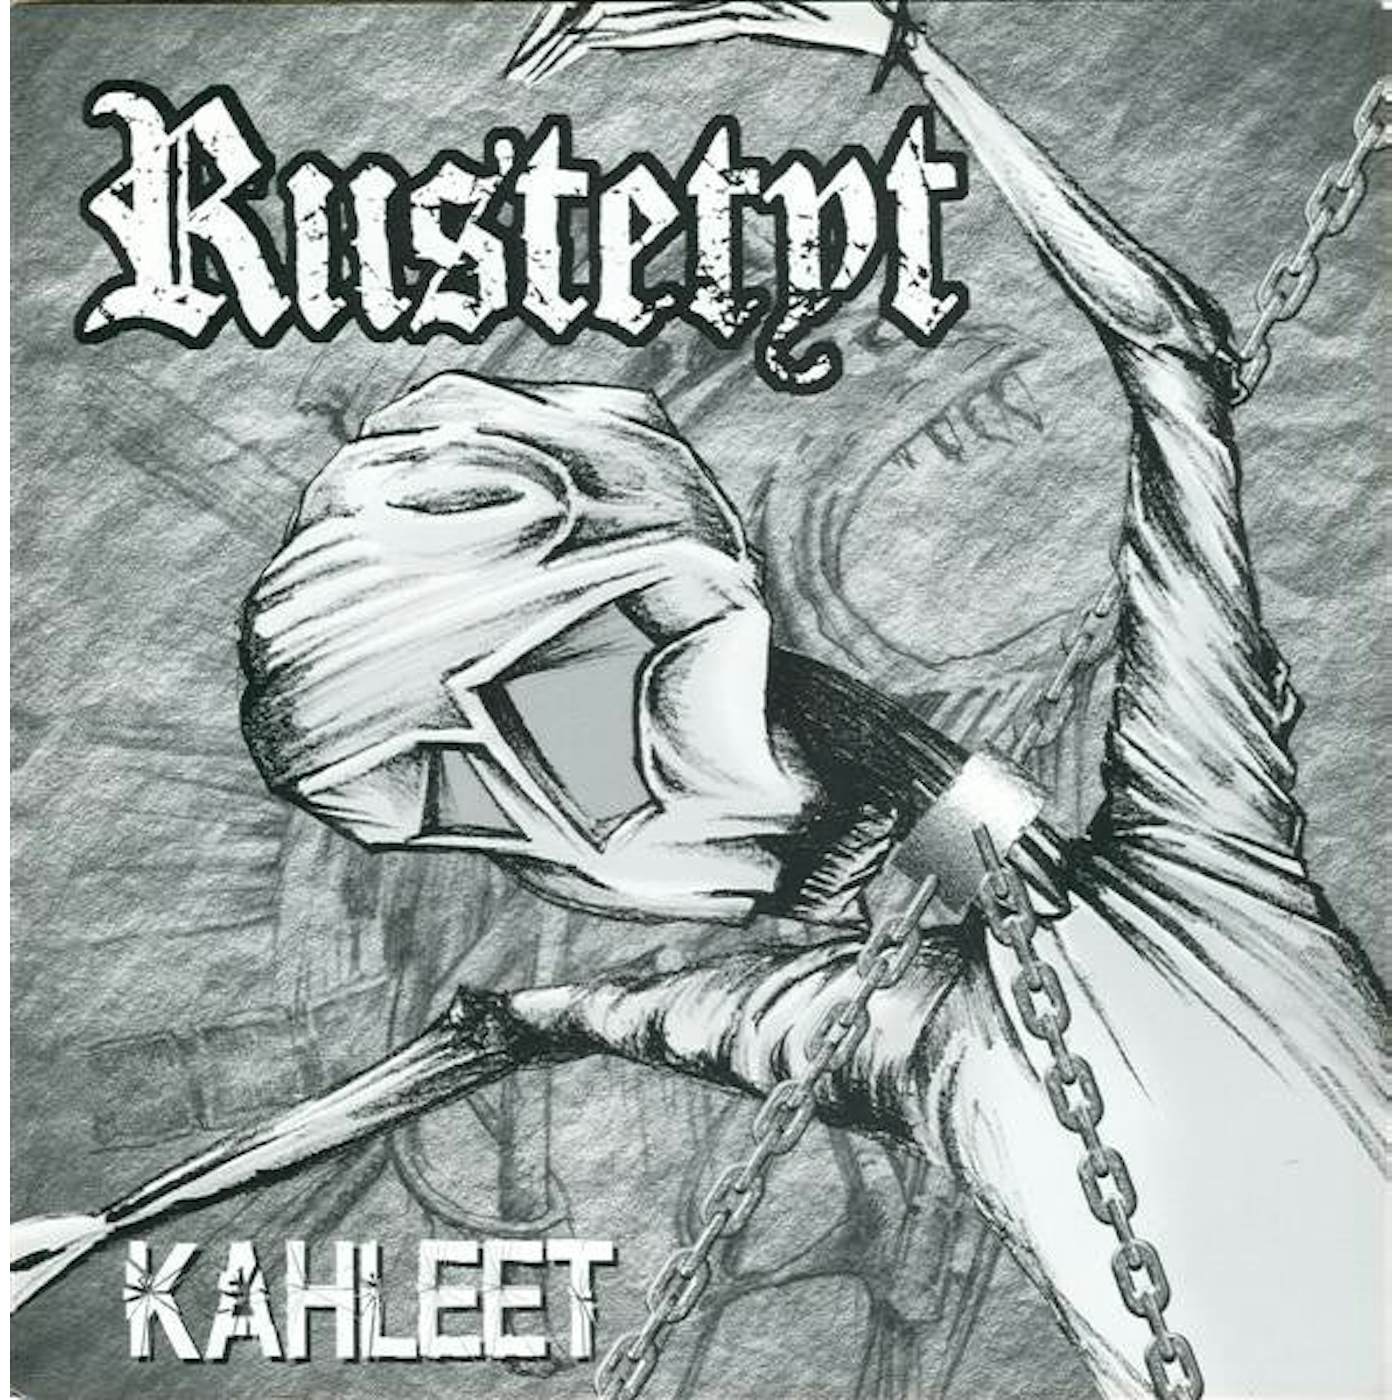 Riistetyt ‎– Kahleet 7" record